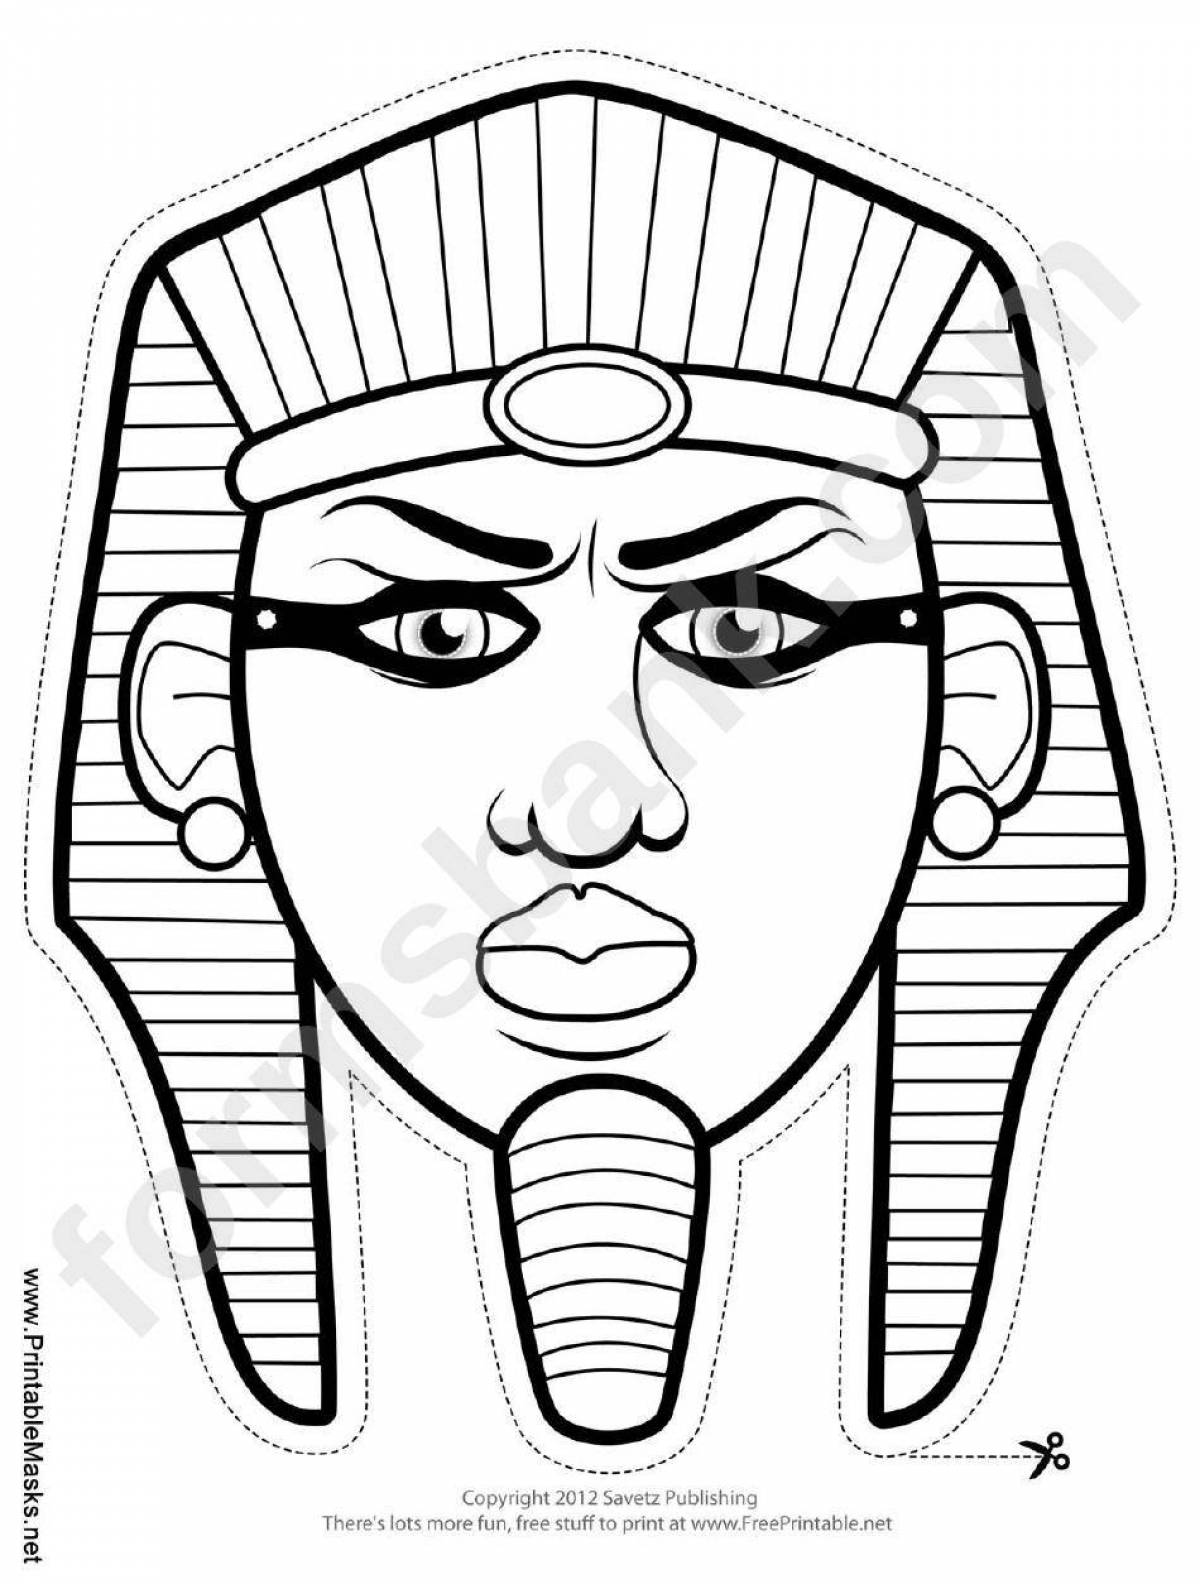 Раскраска украшенная маска фараона тутанхамона